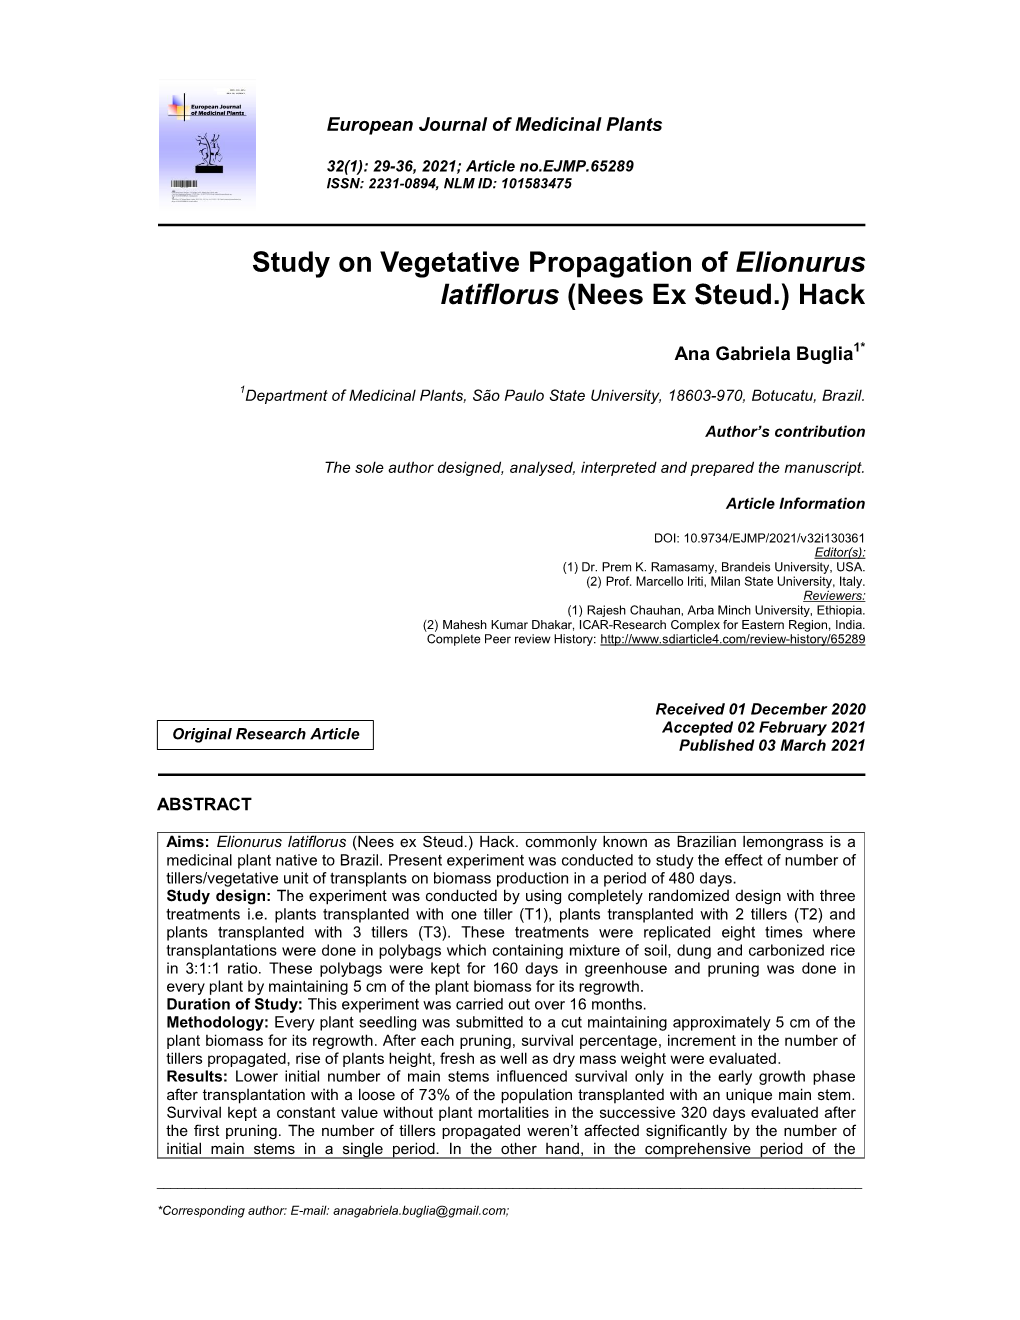 Study on Vegetative Propagation of Elionurus Latiflorus (Nees Ex Steud.) Hack